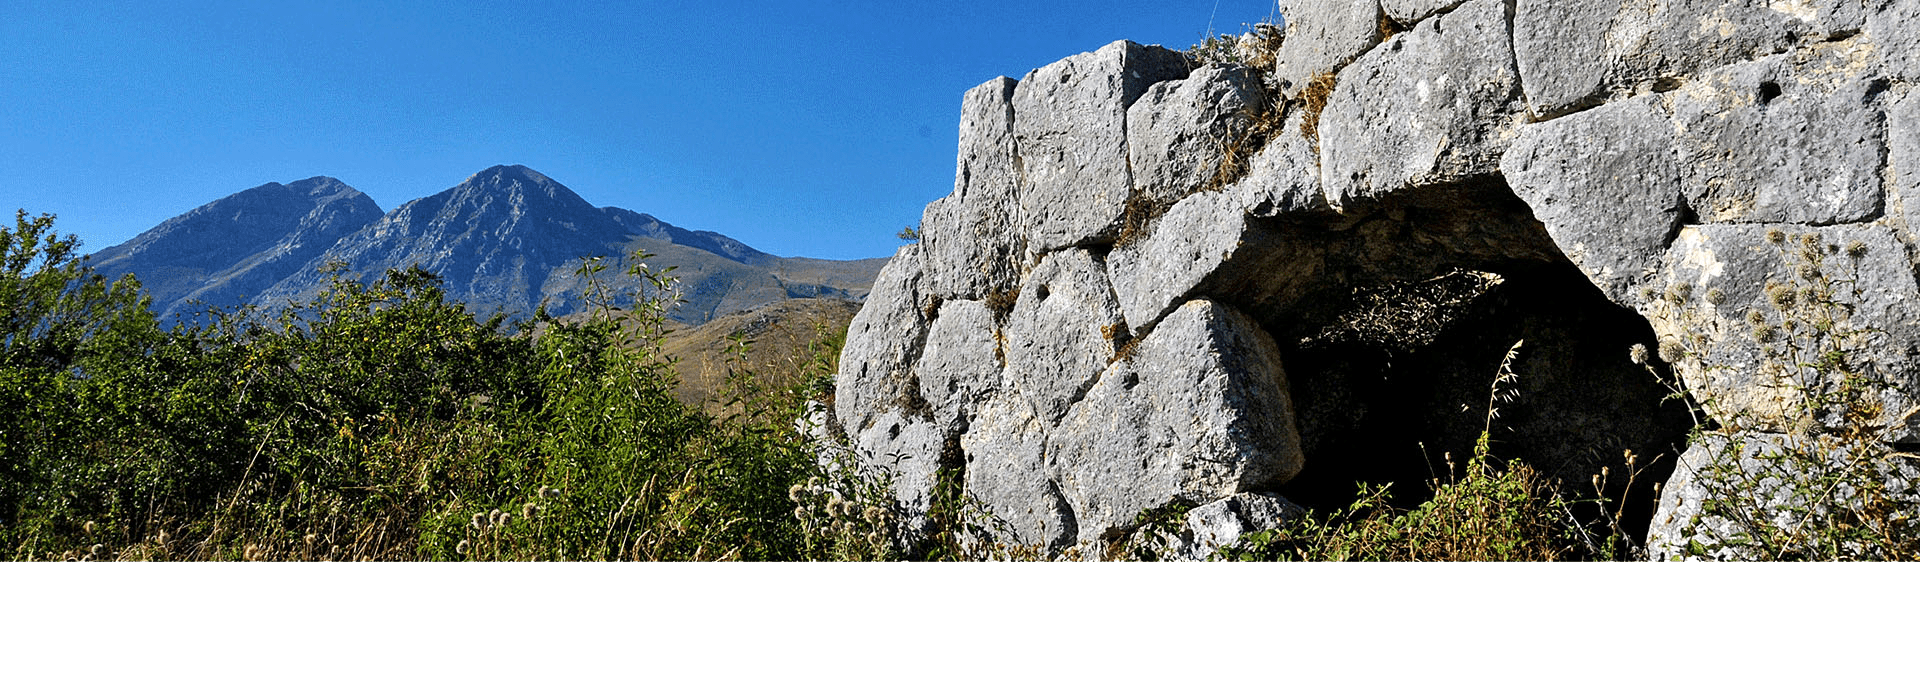 Rocca Calascio – S. Stefano di Sessanio